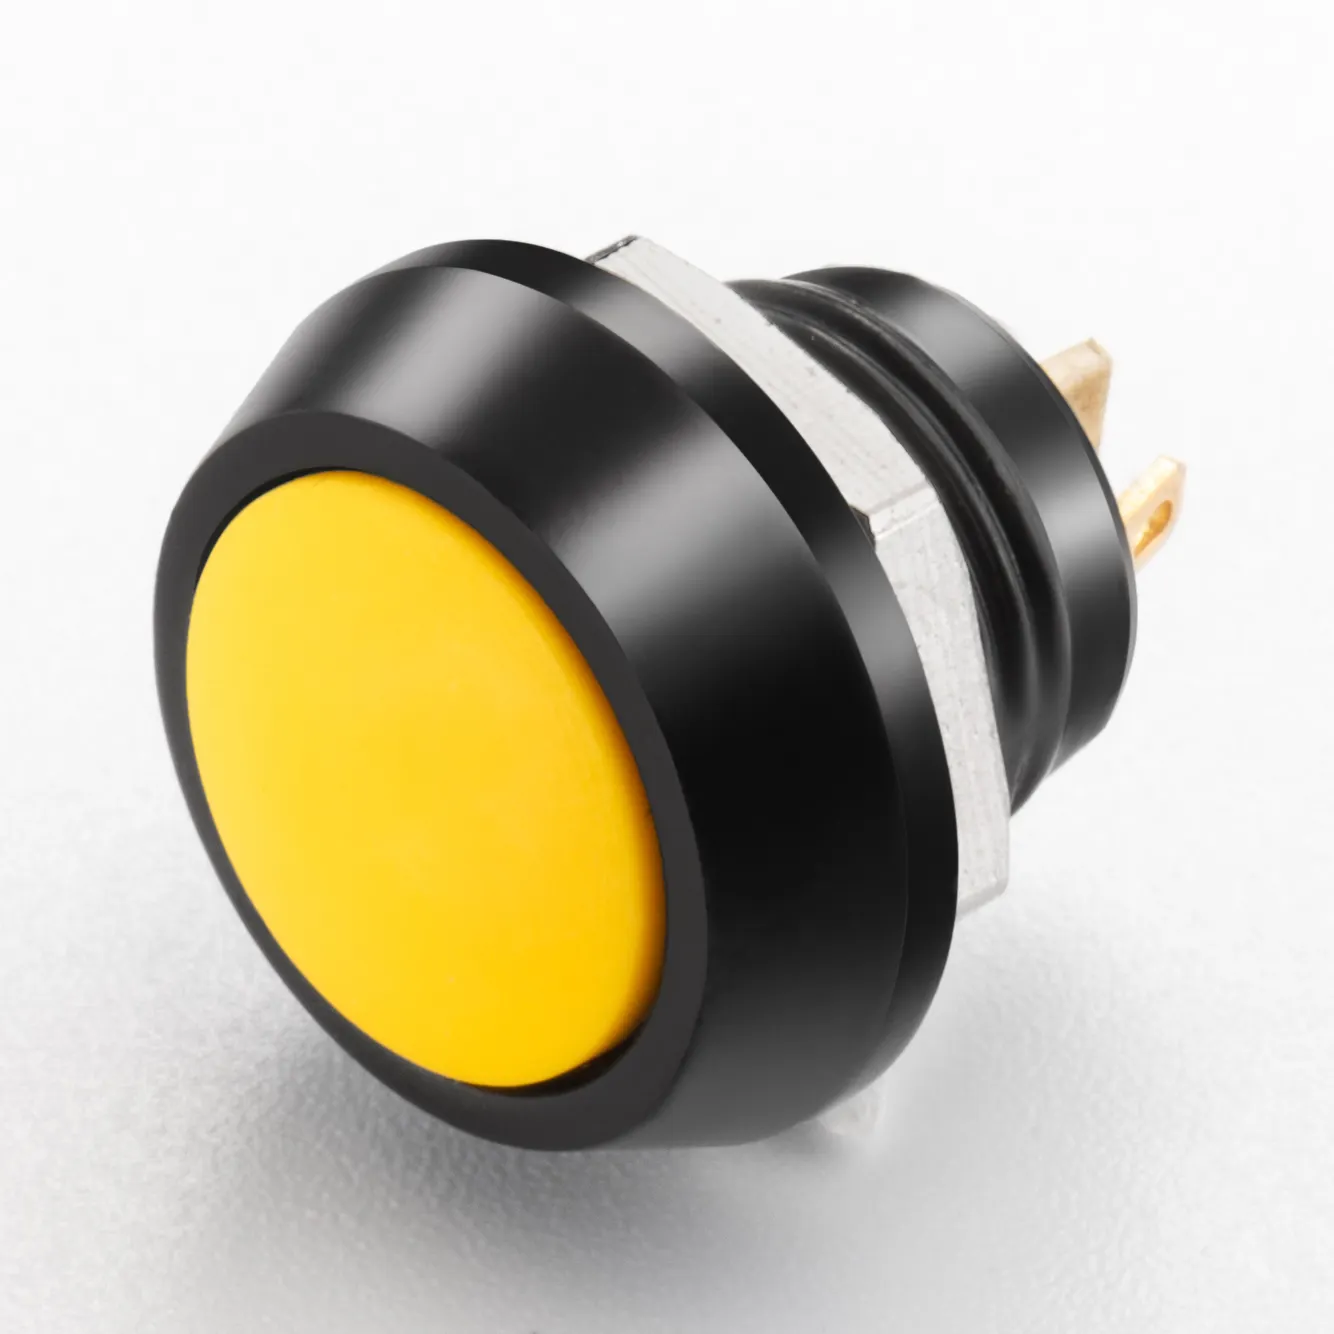 Sakelar tombol tekan 12mm (1NO) dengan aluminium hitam atau baja tahan karat